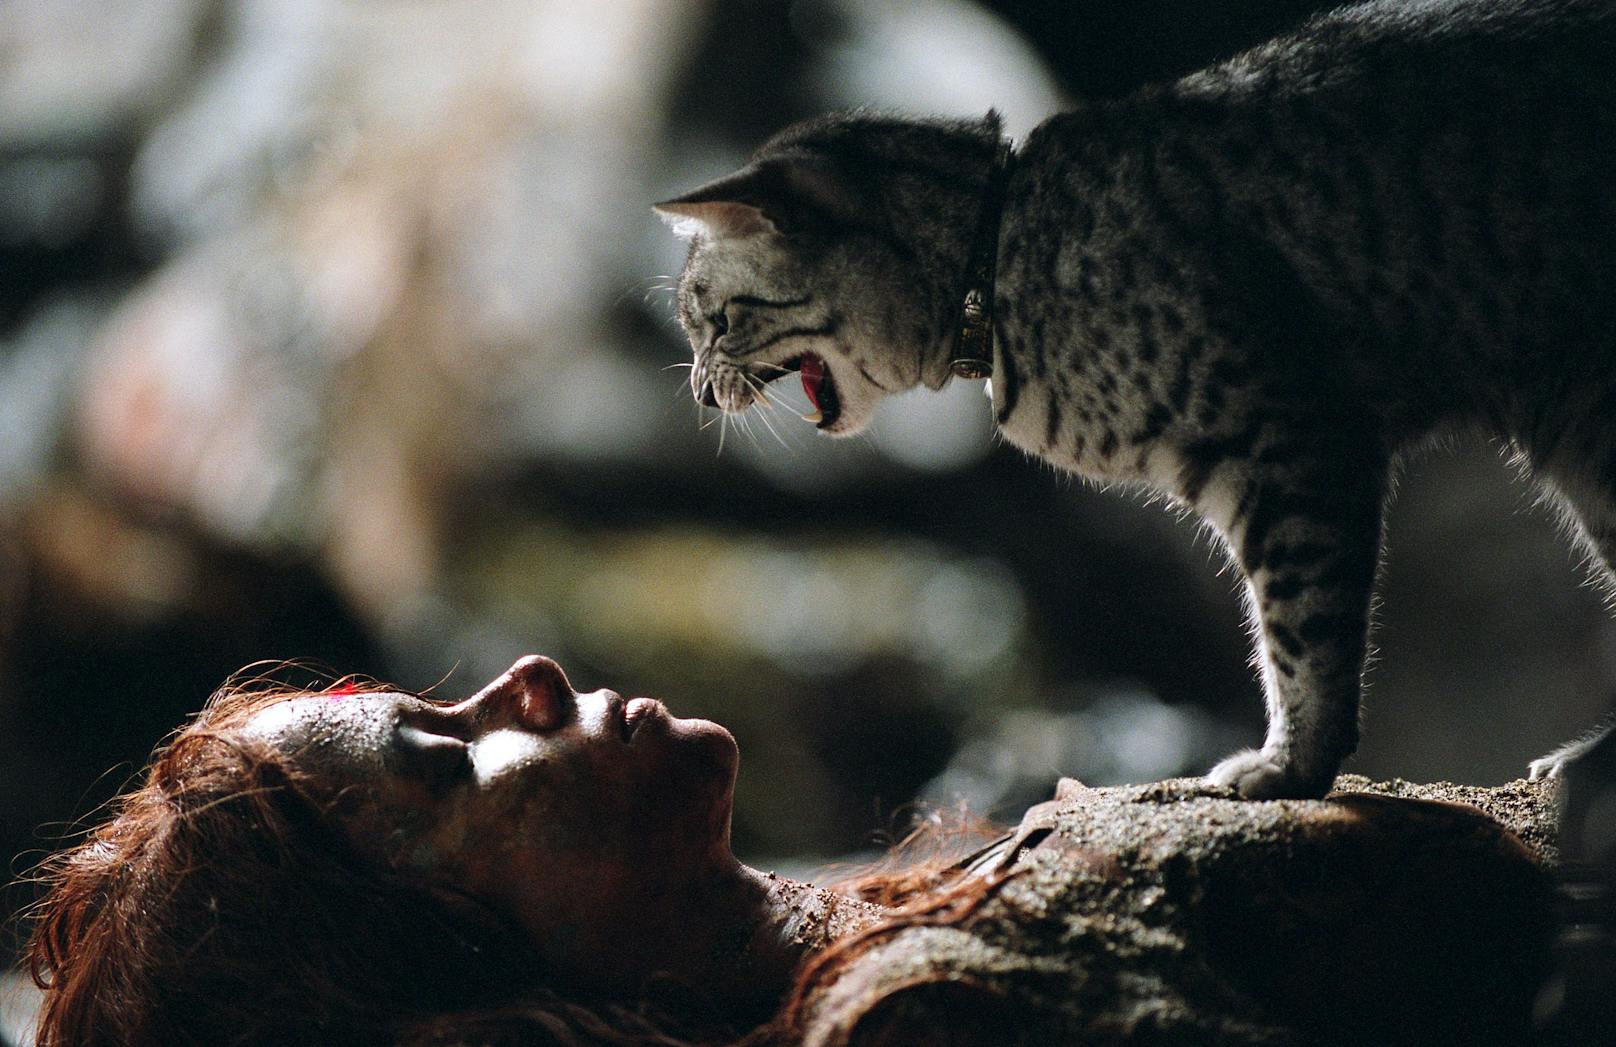 Im Blockbuster "Catwoman" (2004) mit Halle Berry in der Hauptrolle, hauchte die ägyptische Mau-Katze "Midnight" der schüchternen Titelheldin das neue Leben als Katzenfrau ein.&nbsp;